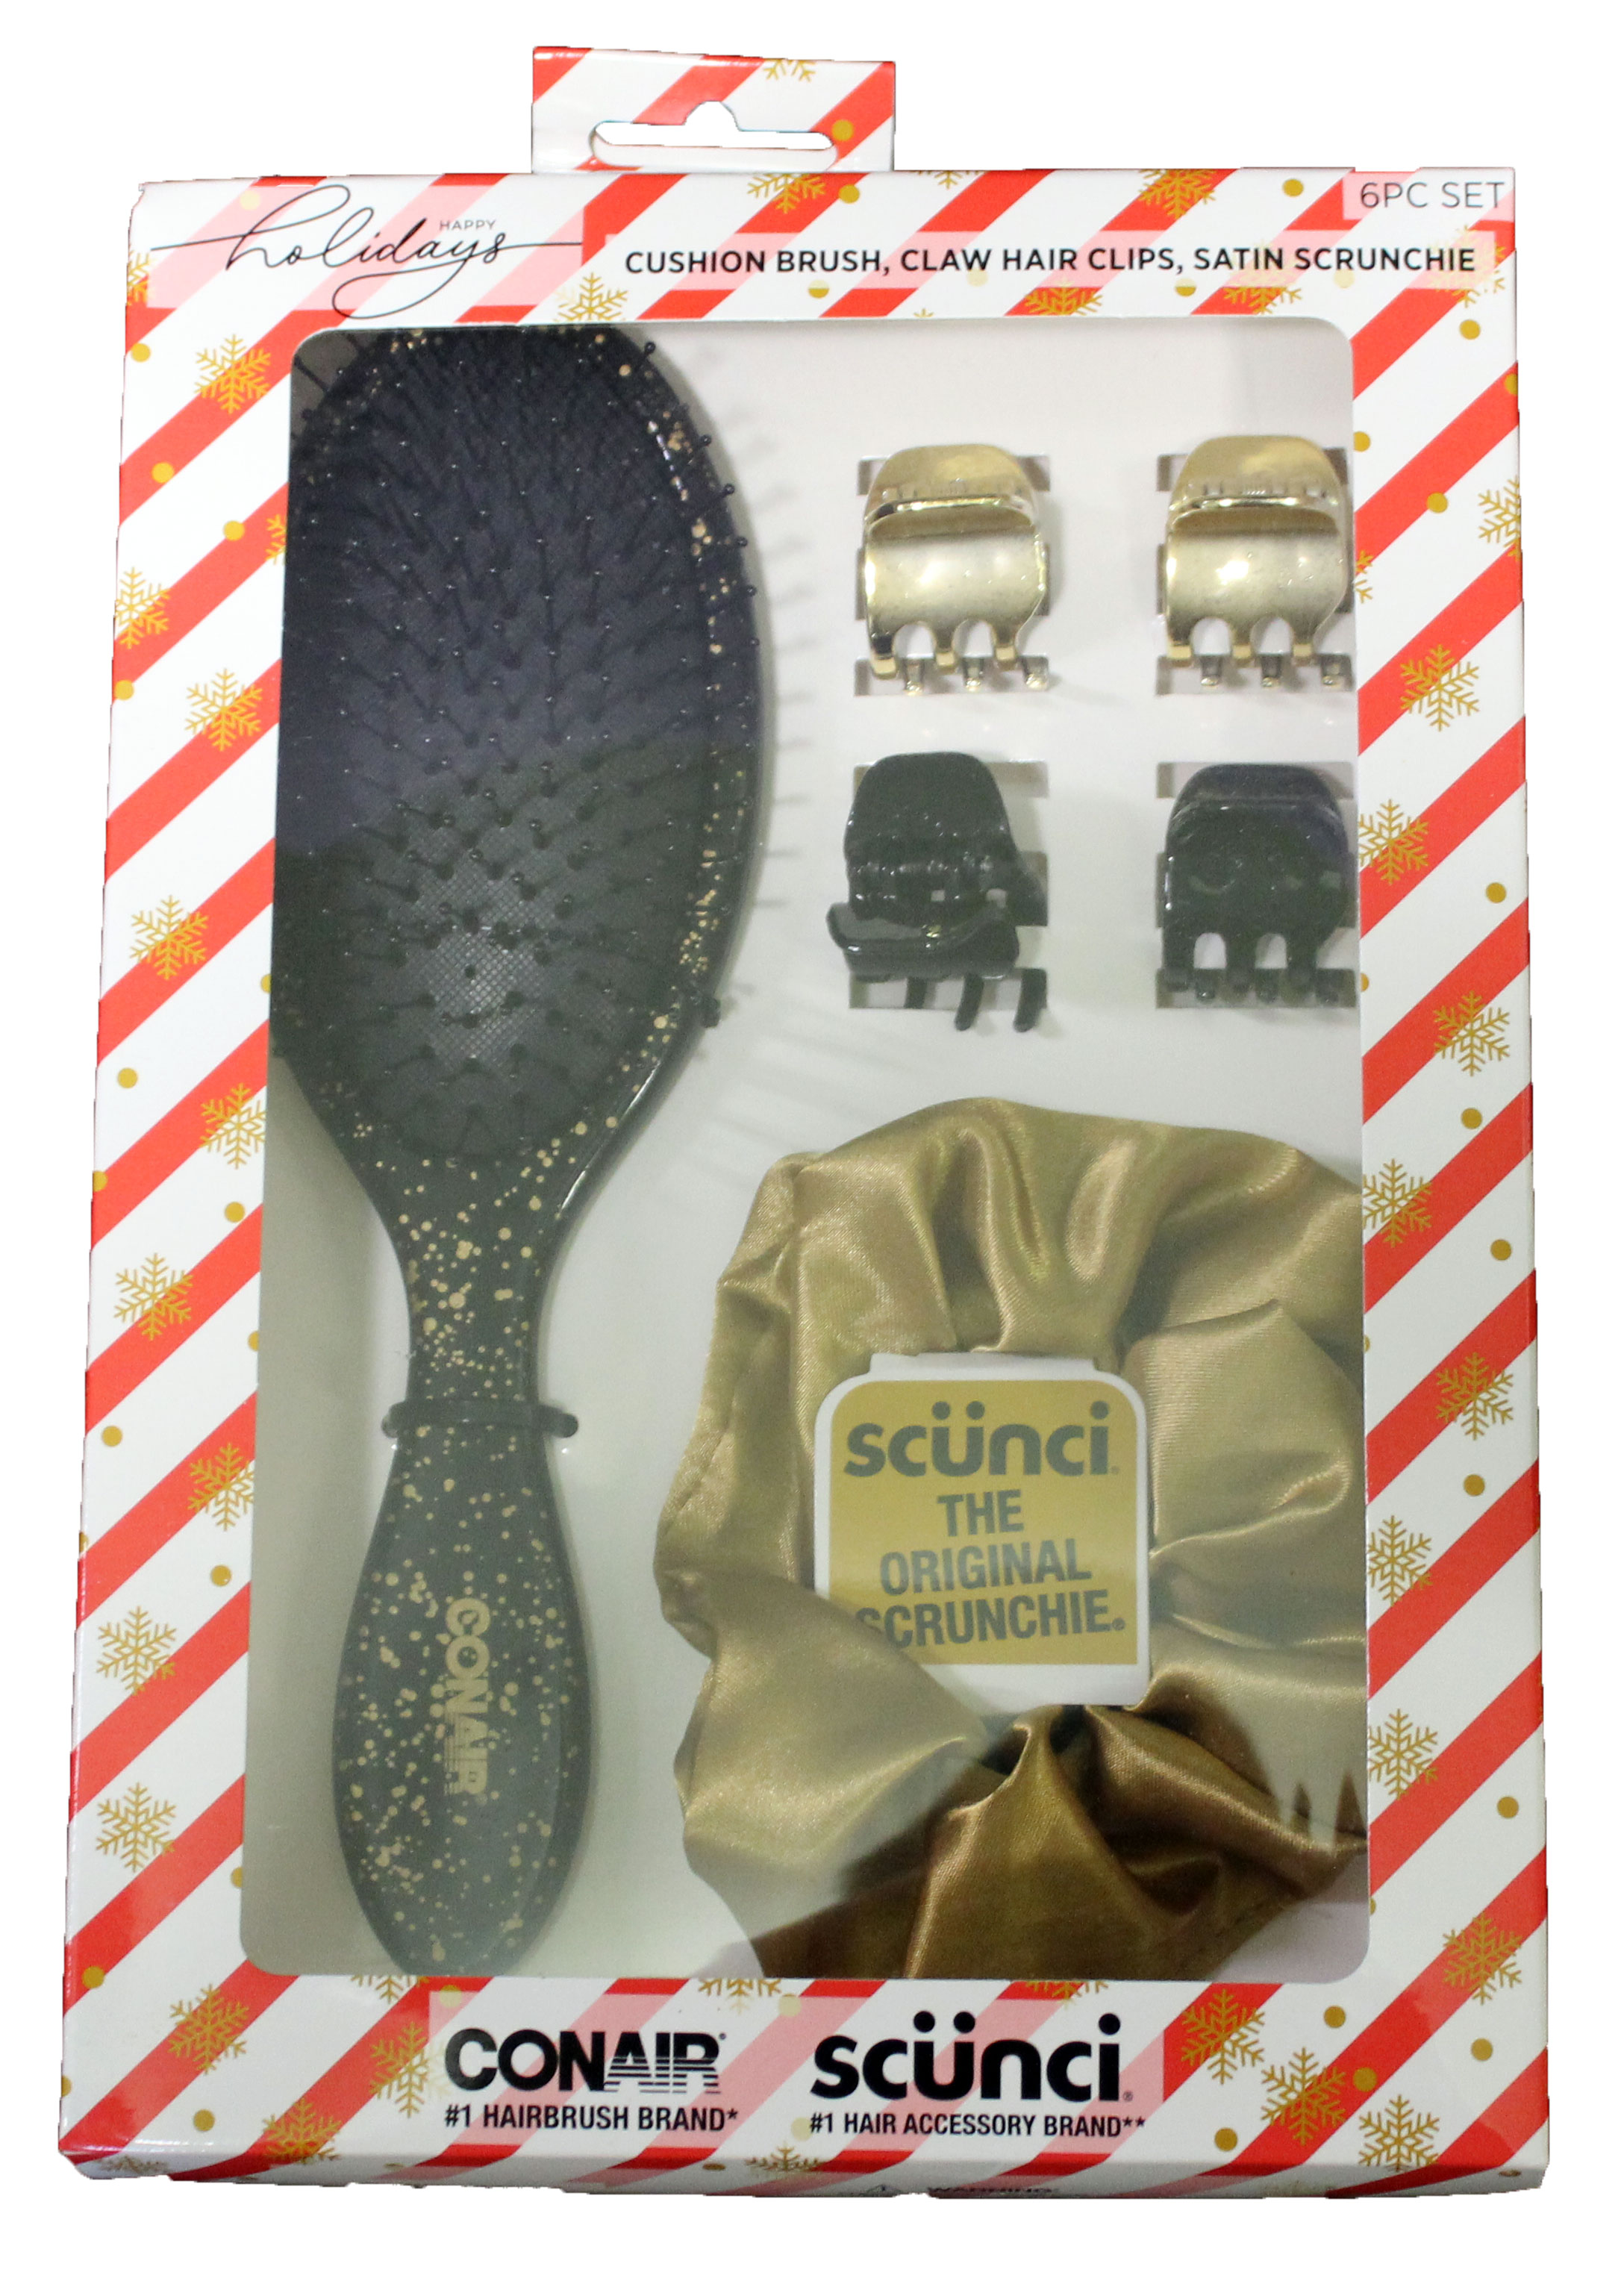 Conair + Scunci Cushion Brush, Claw Hair Clip, Satin Scrunchie Happy Holidays Set